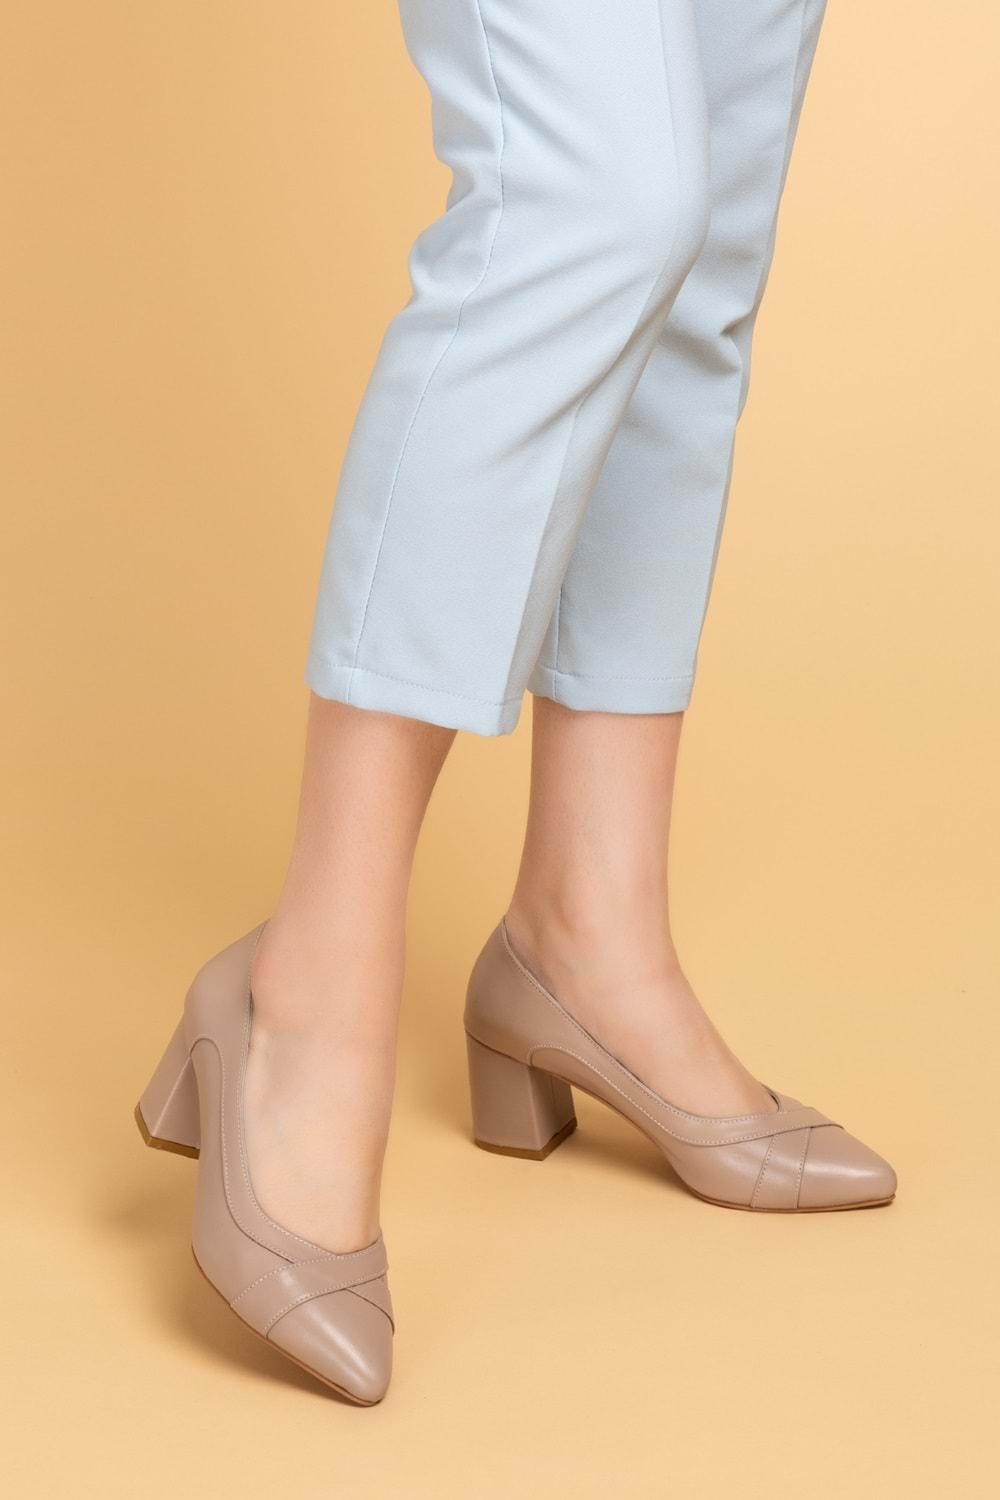 Gondol Kadın Hakiki Deri Rahat Klasik Topuklu Ayakkabı şhn.722 - Vizon - 35